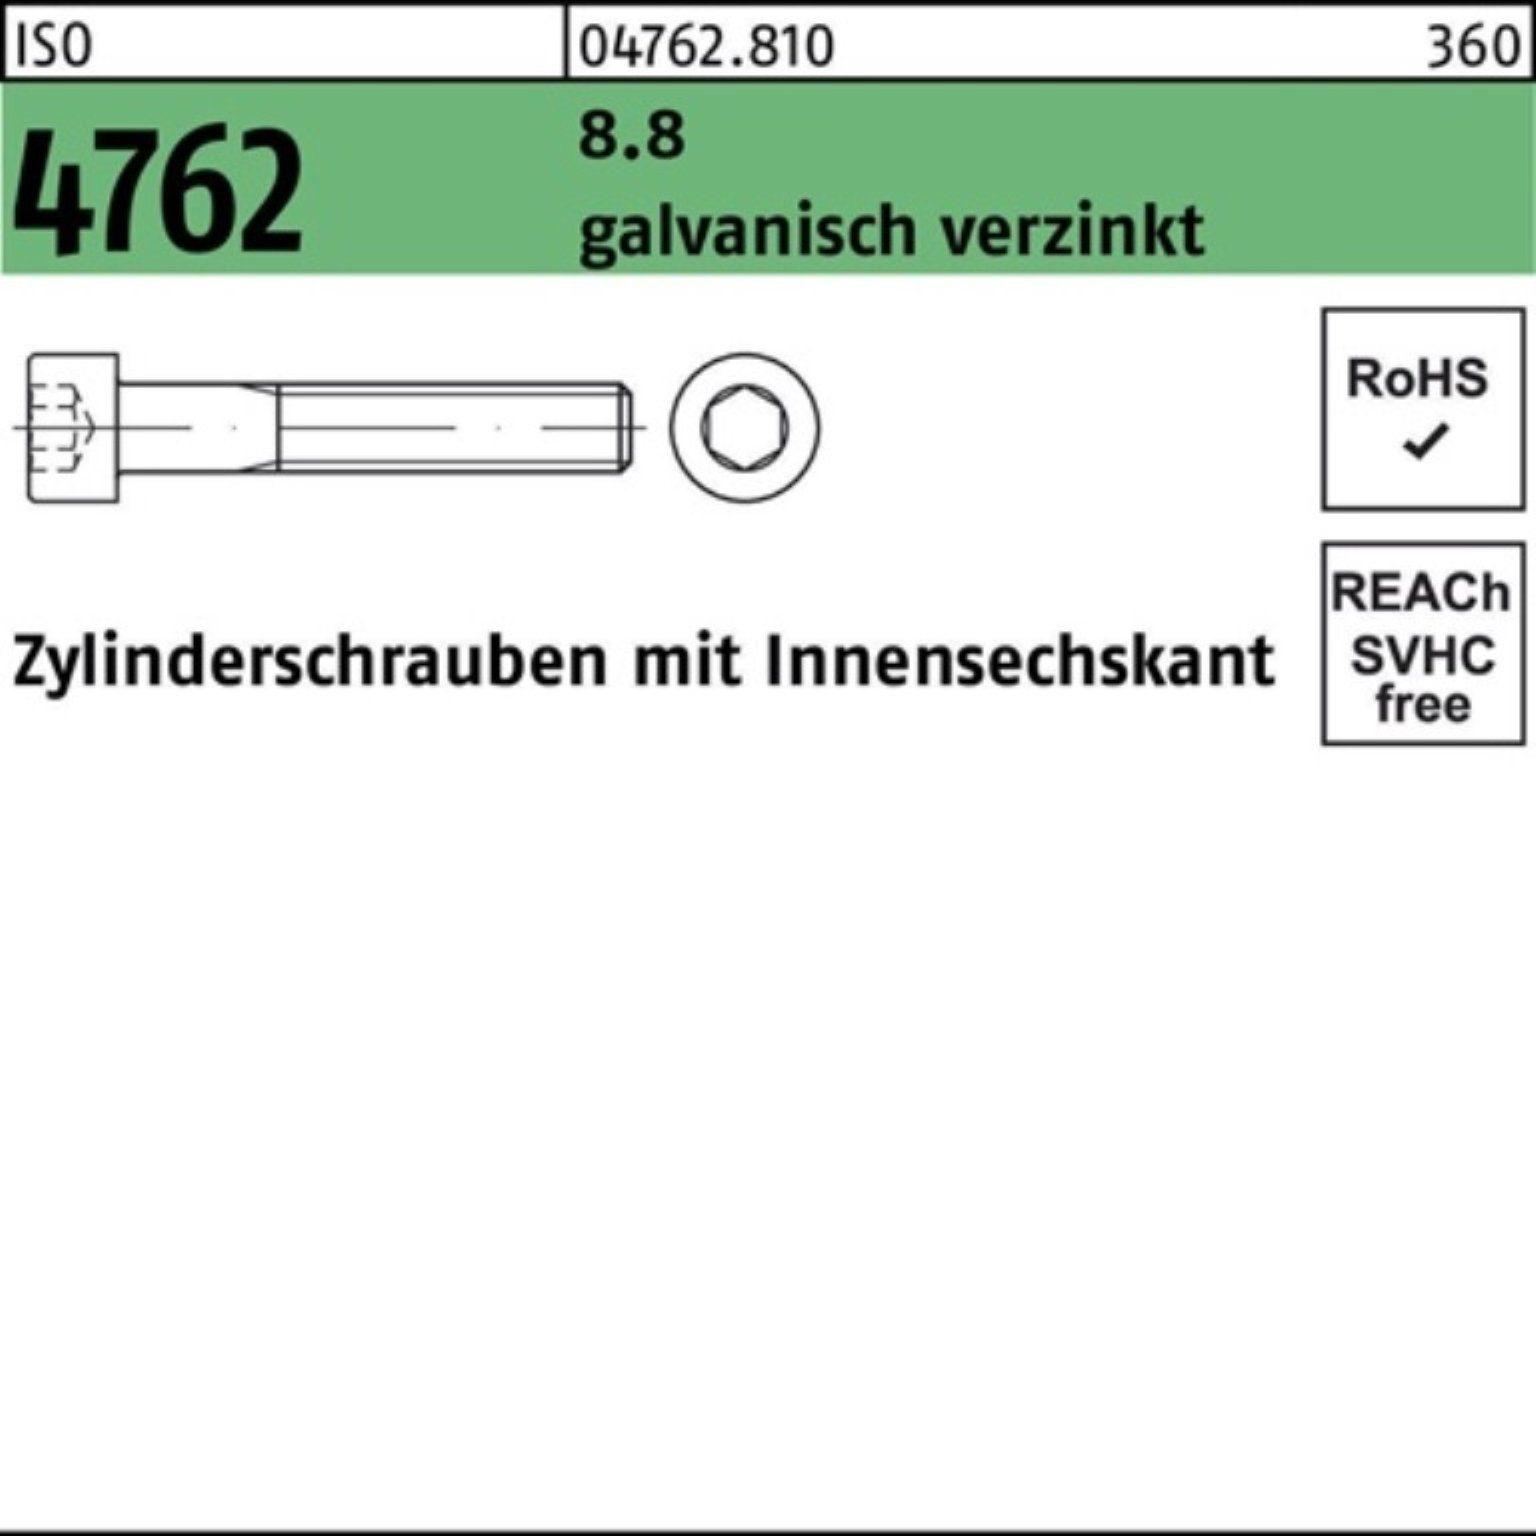 ISO Zylinderschraube Zylinderschraube galv.verz. Reyher Innen-6kt 8.8 100er M6x30 4762 Pack 10